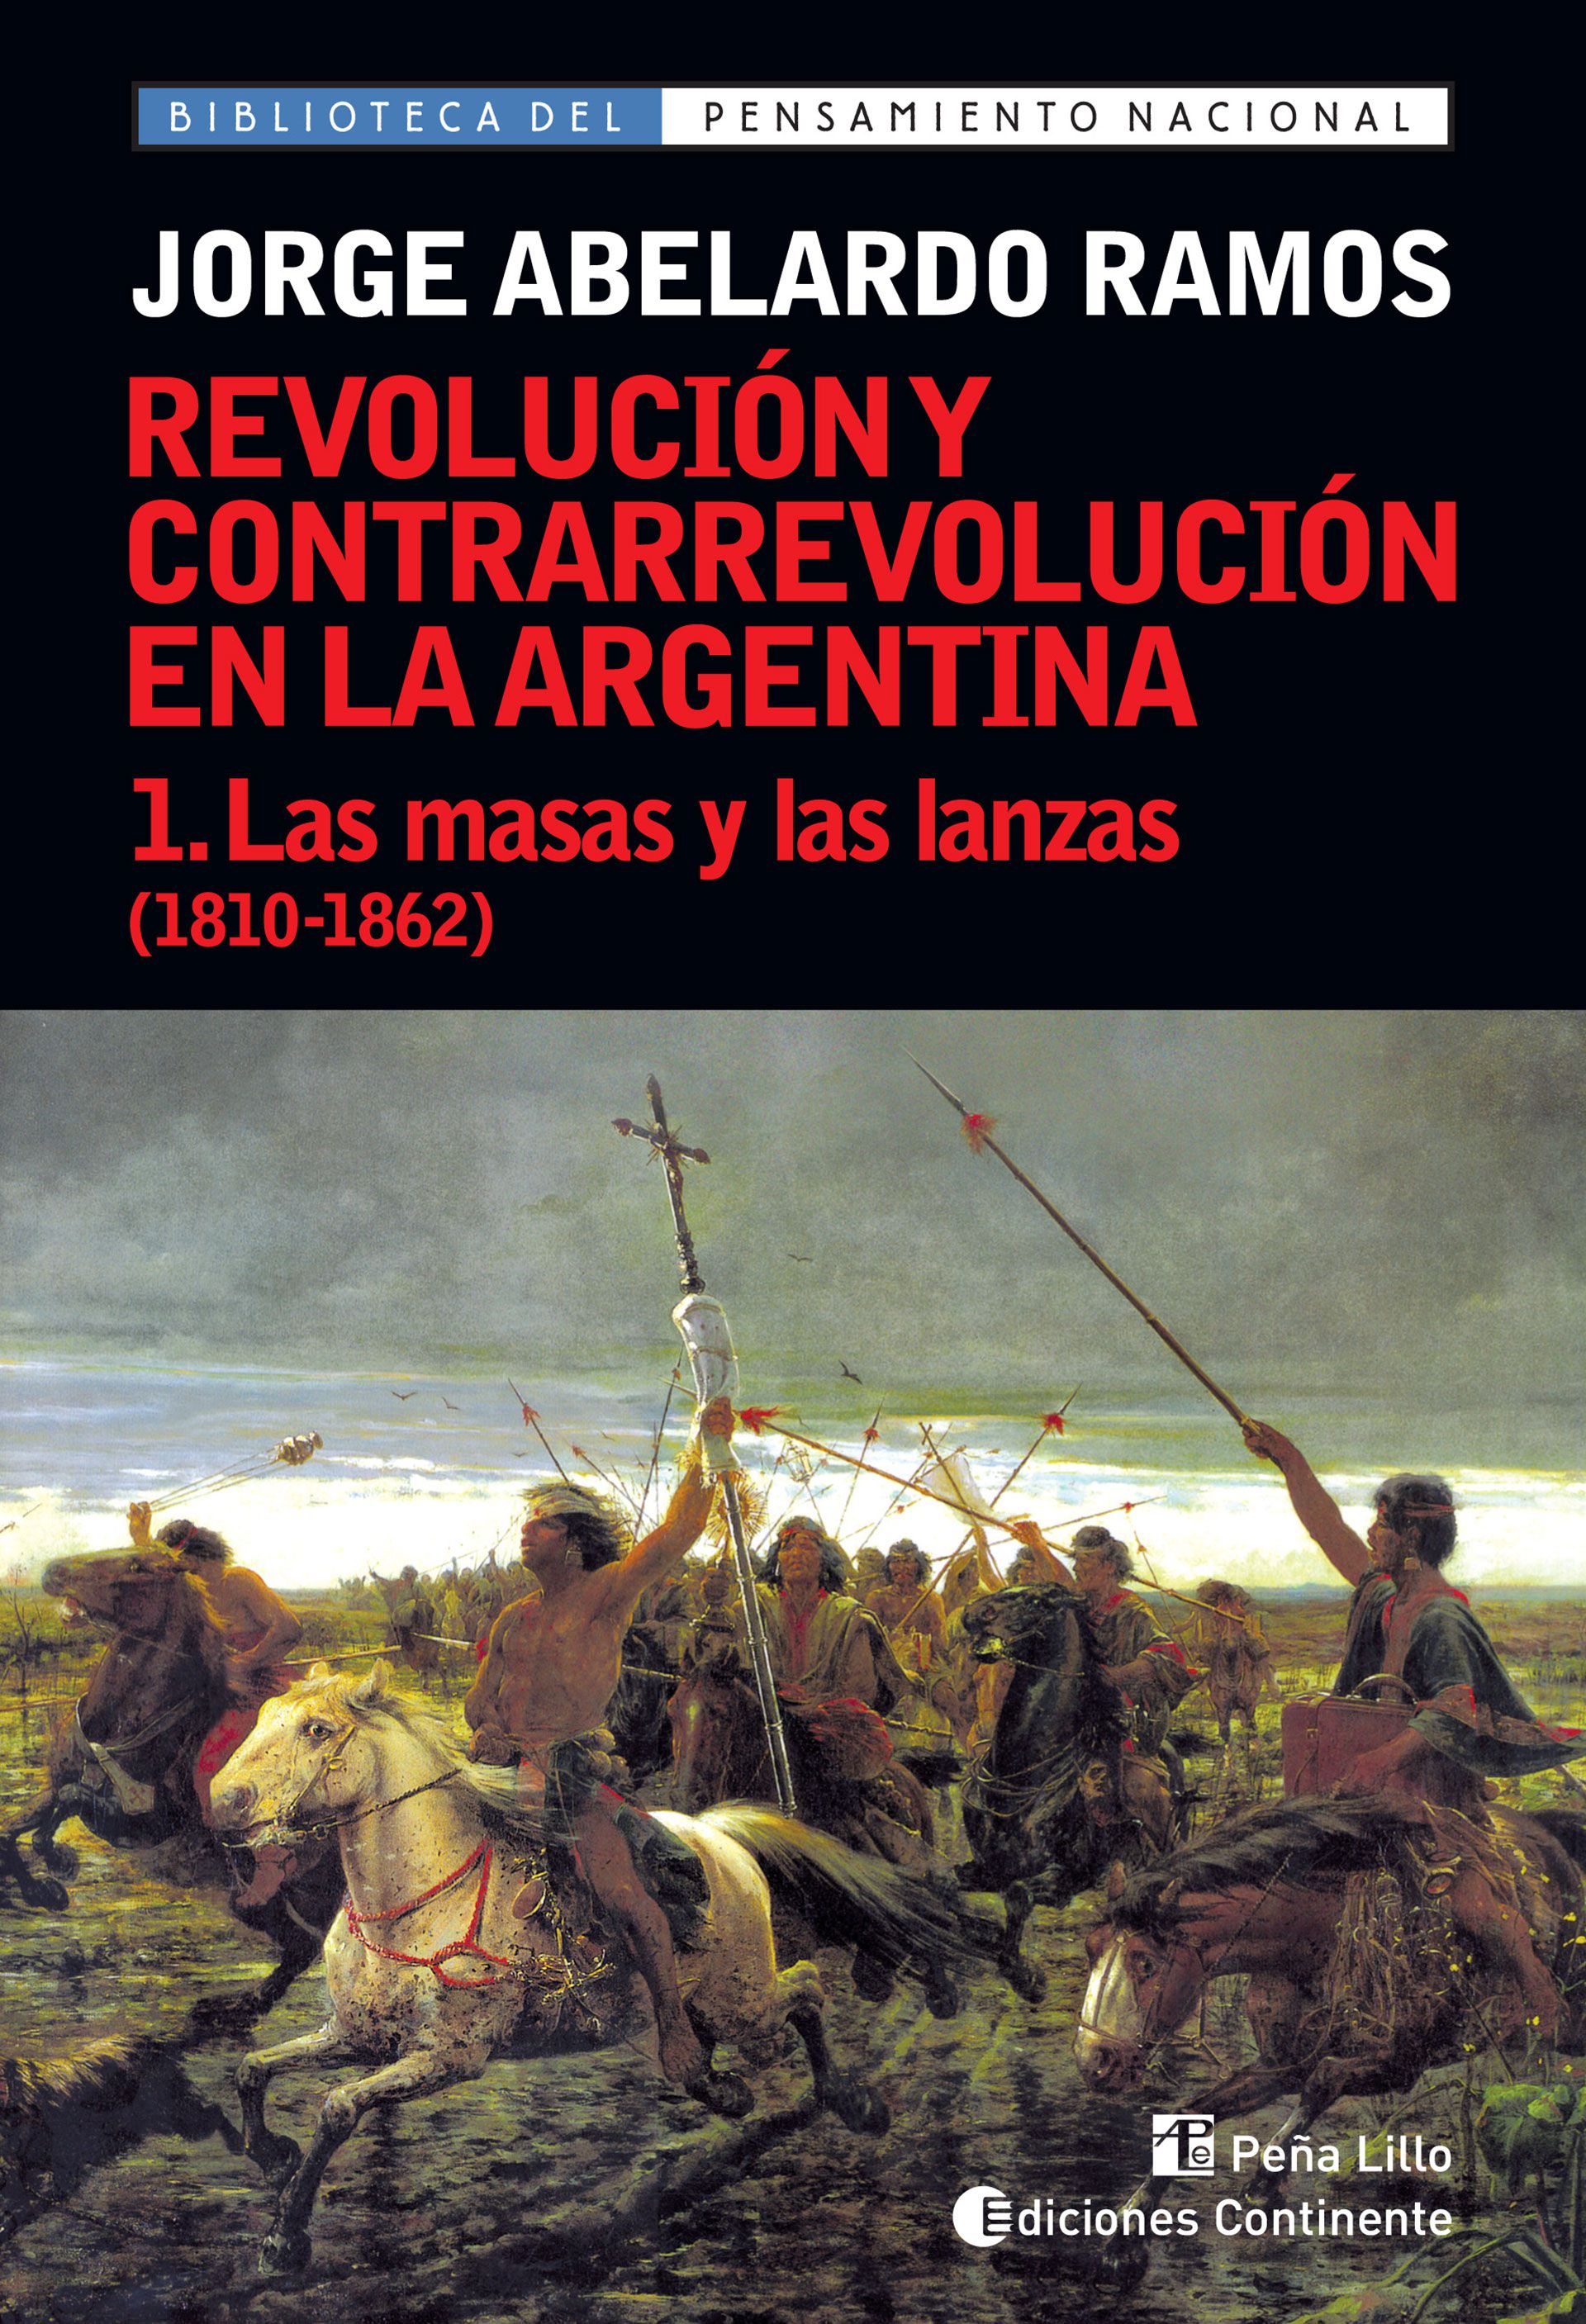 El primer tomo de la principal obra de J.A.Ramos: Revolución y contrarrevolución en la Argentina. Se publicó por primera vez en 1957 y fue reeditada varias veces